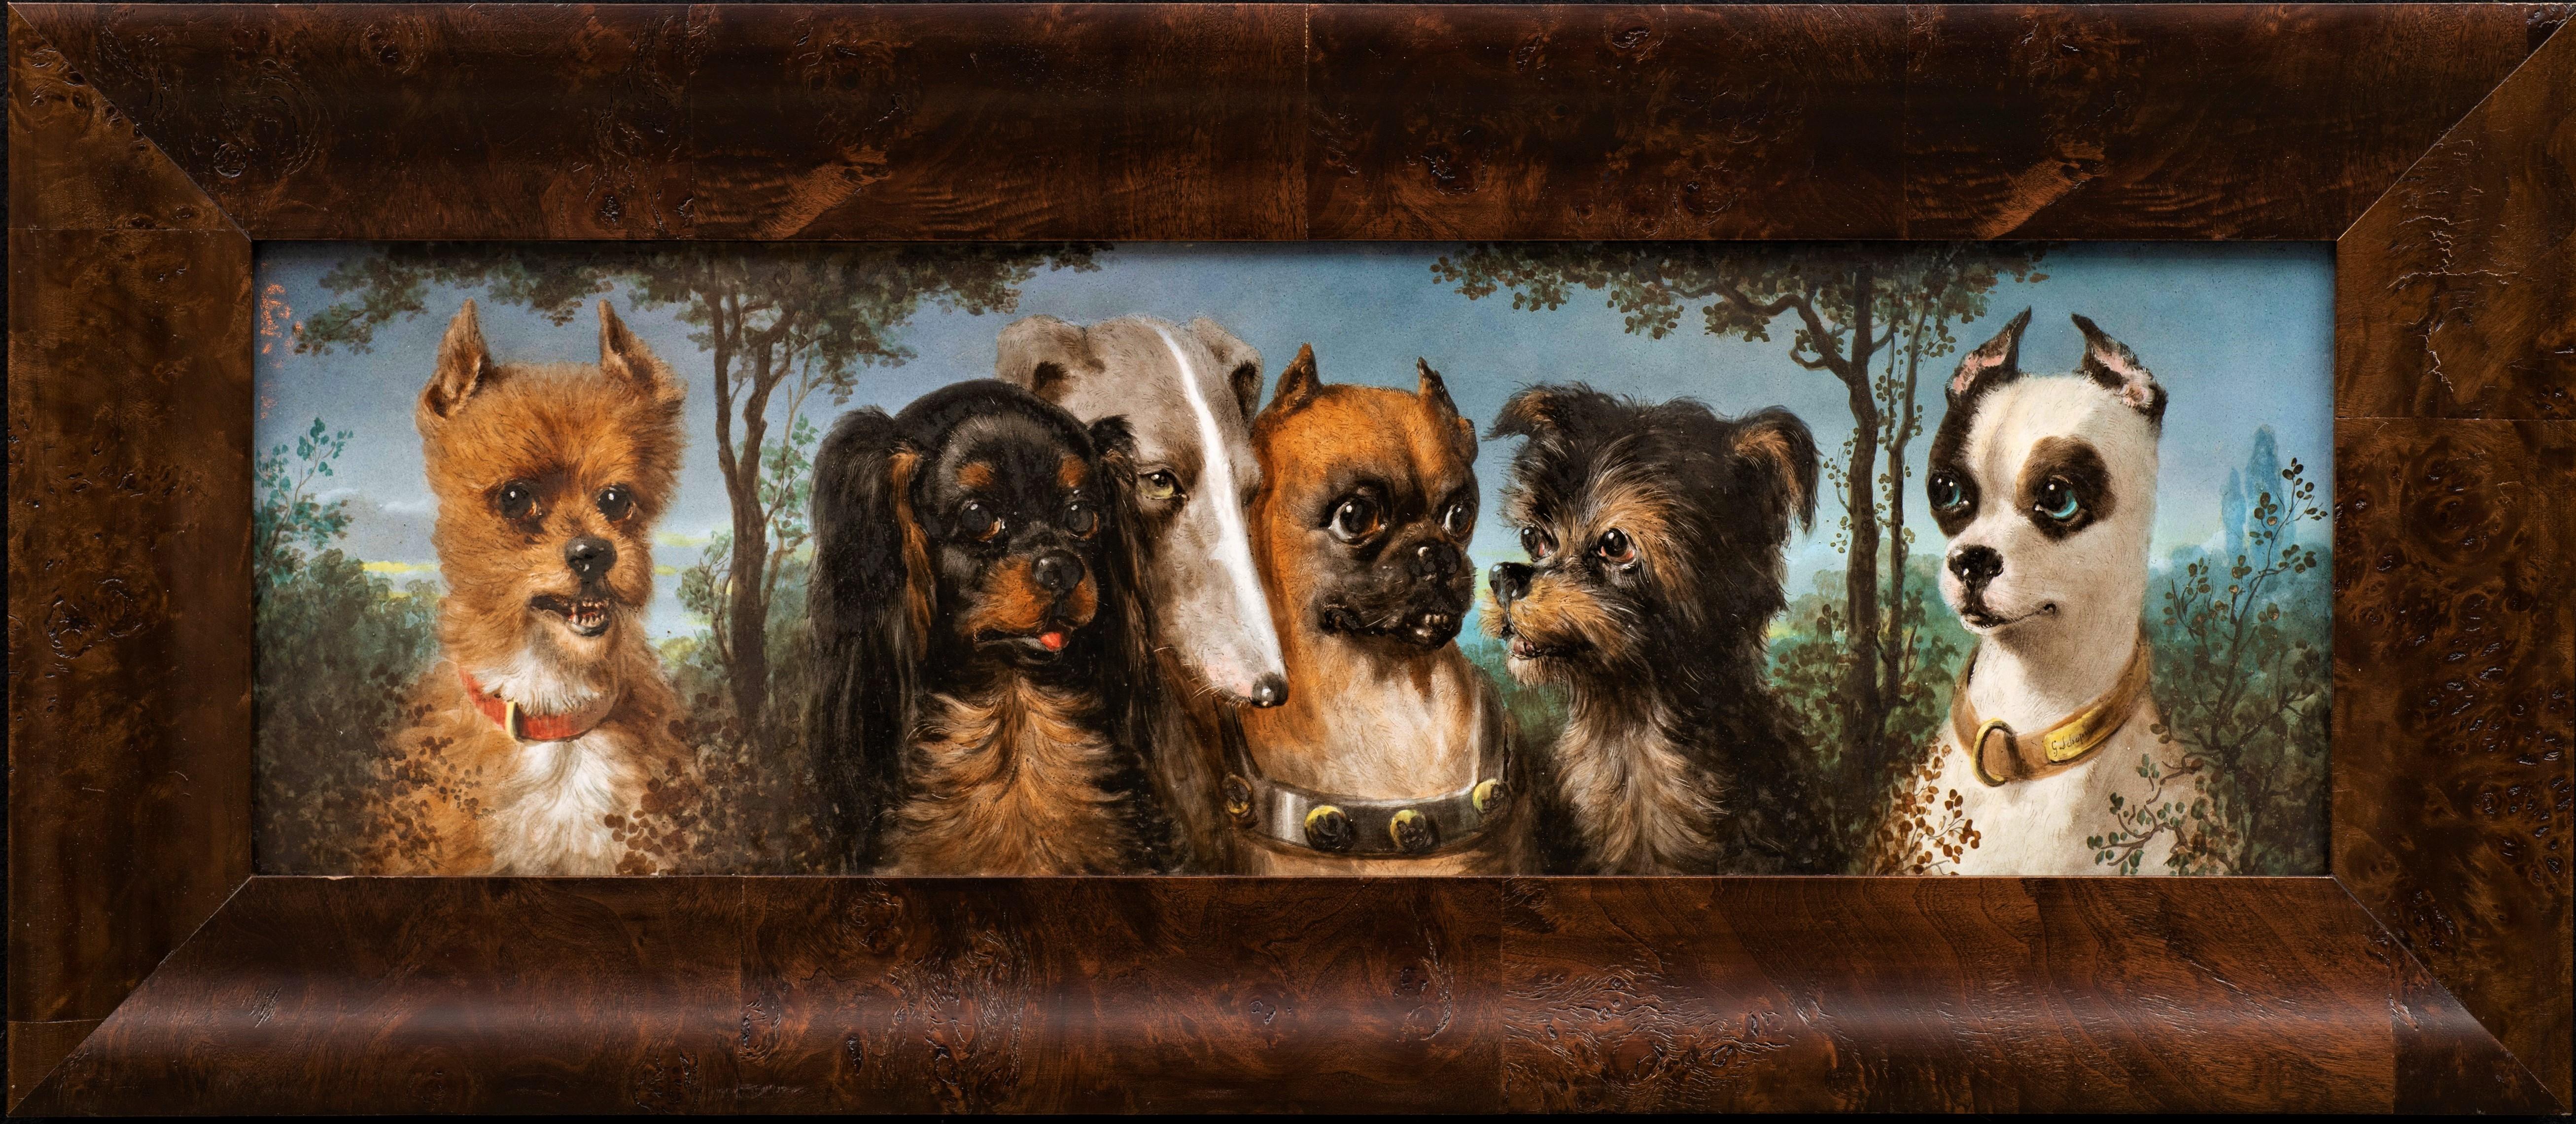 Portrait Painting Jules Loebnitz - Portrait ancien de 6 chiens sur porcelaine de la Maison Pichenot-Loebnitz vers 1870